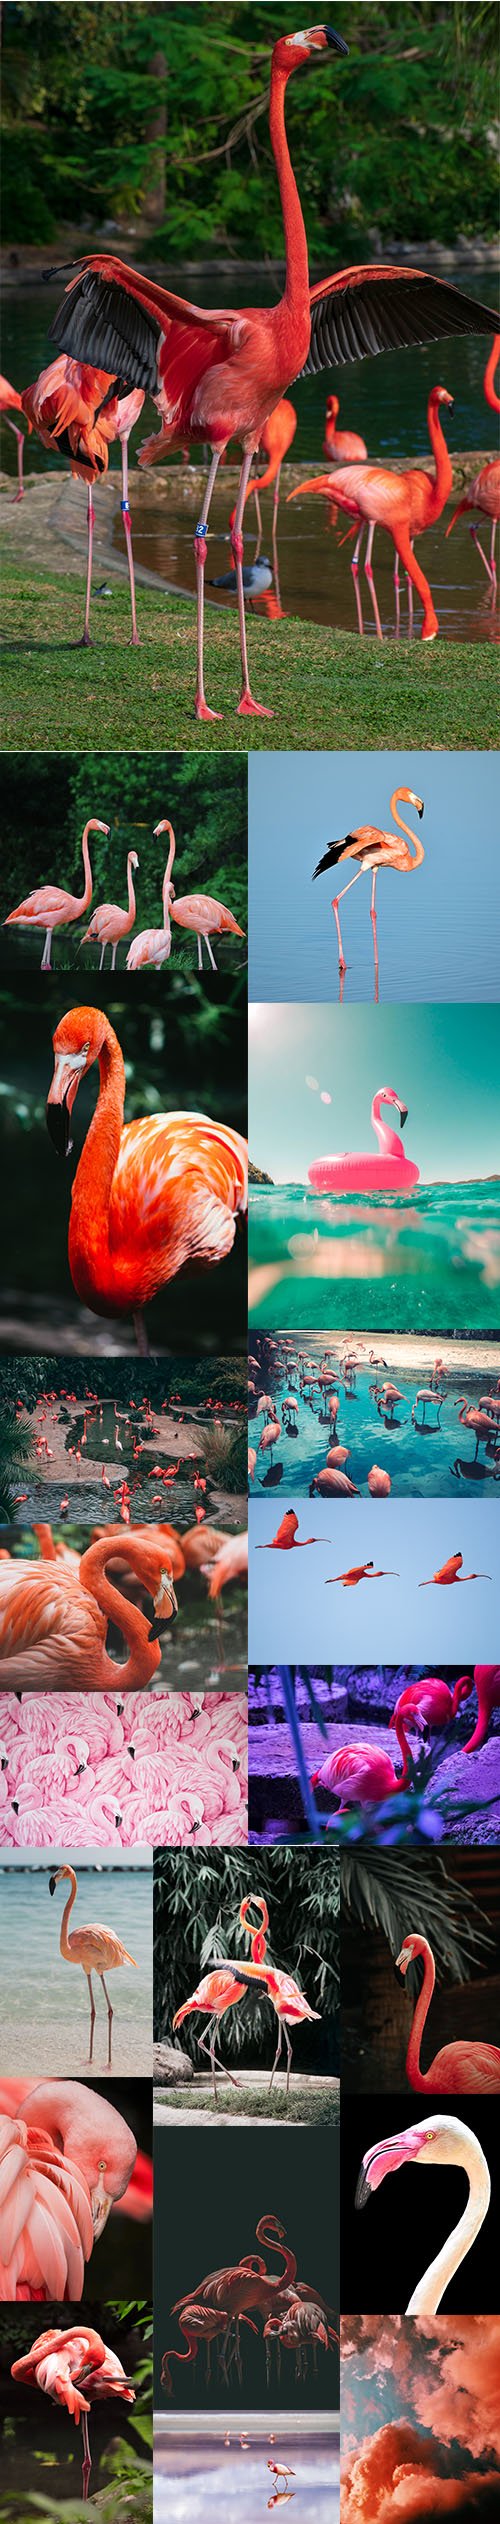 Flamingo - Premium UHQ Stock Photo Bundle